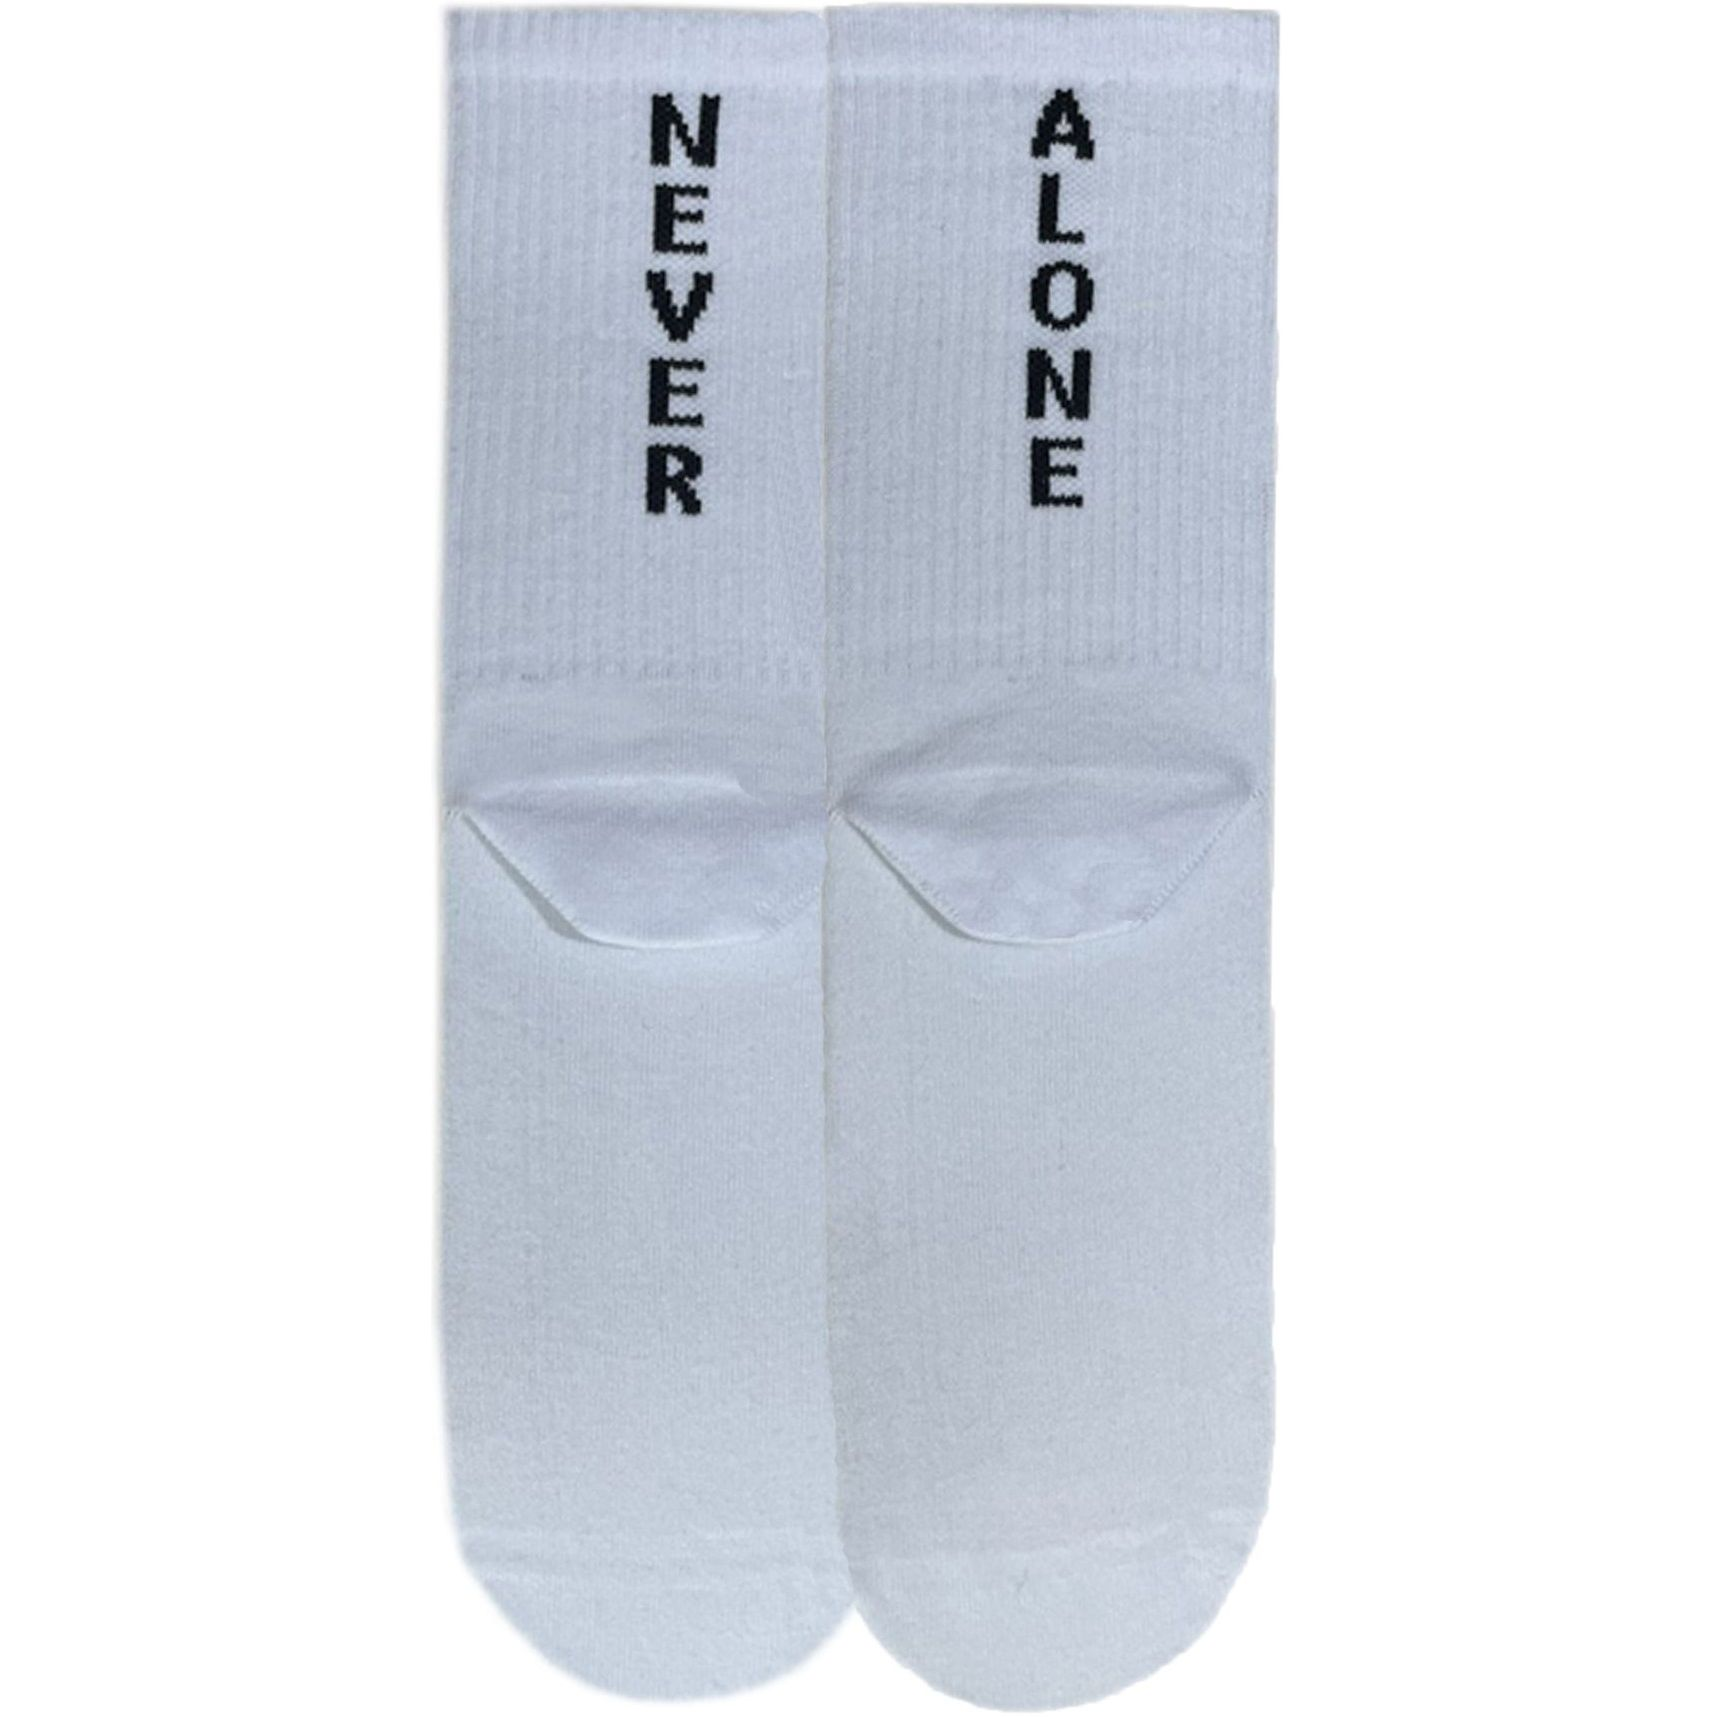 Шкарпетки чоловічі Premier Socks 42-43 1 пара білі з принтом (4820163317922)фото1